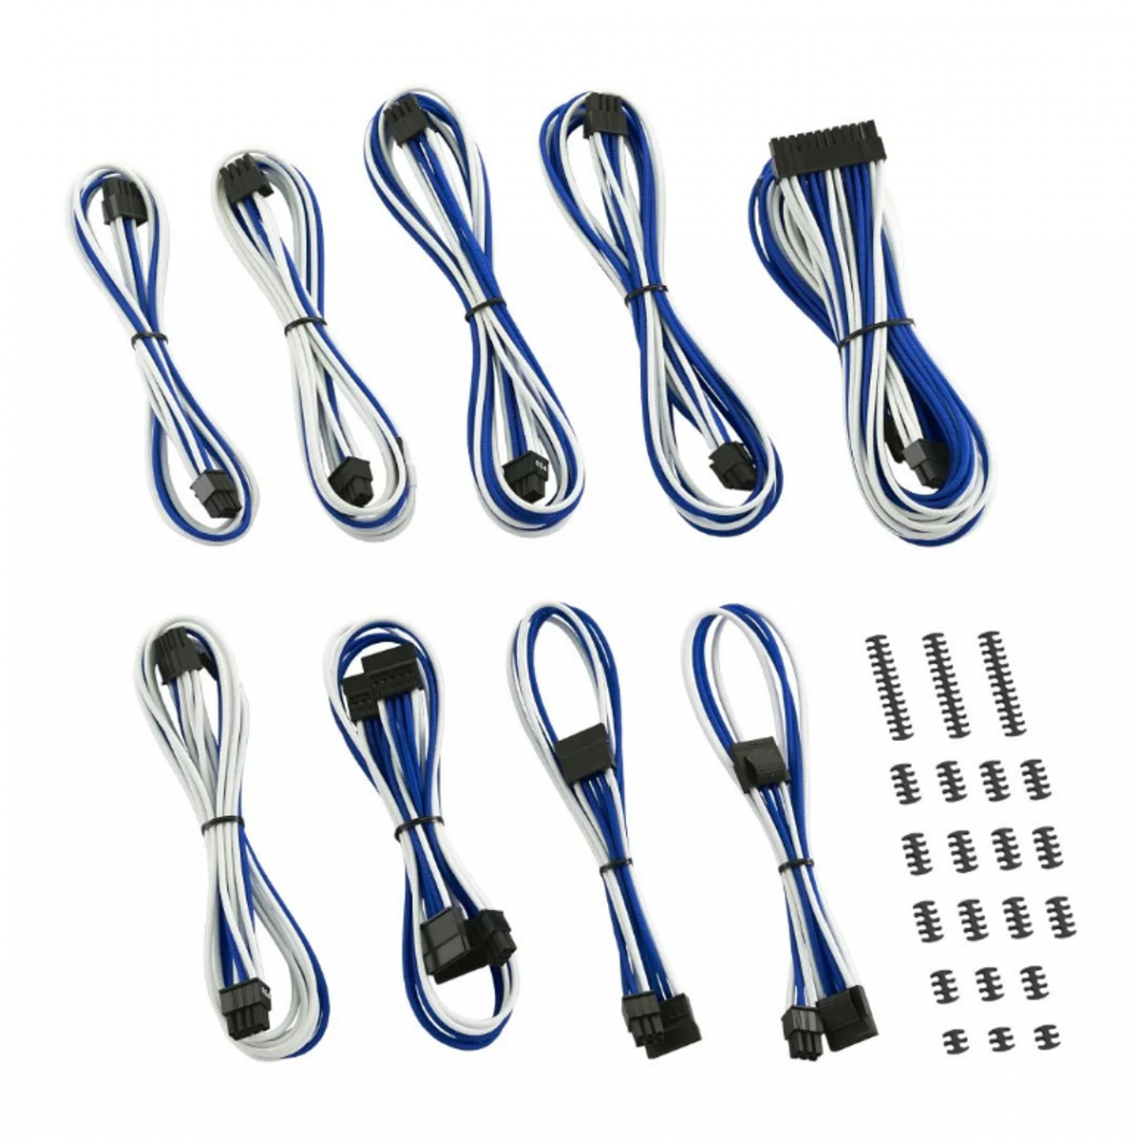 Cablemod - CableMod Classic ModMesh C-Series Cable Kit Corsair RMi & RMx - Bleu / Blanc - Accessoires alimentation